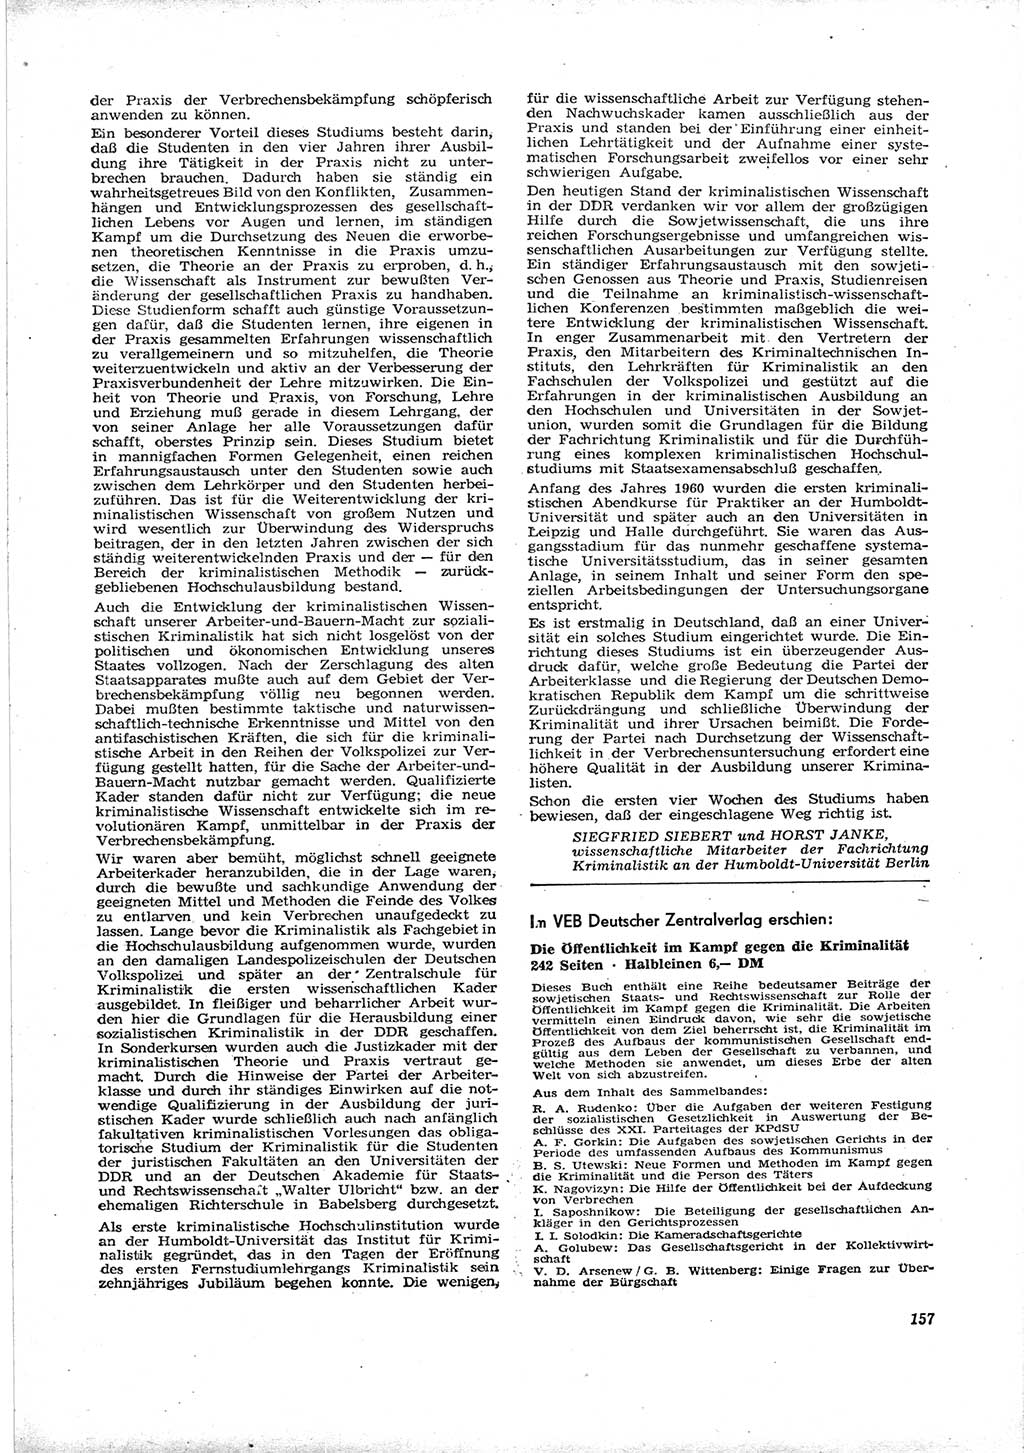 Neue Justiz (NJ), Zeitschrift für Recht und Rechtswissenschaft [Deutsche Demokratische Republik (DDR)], 16. Jahrgang 1962, Seite 157 (NJ DDR 1962, S. 157)